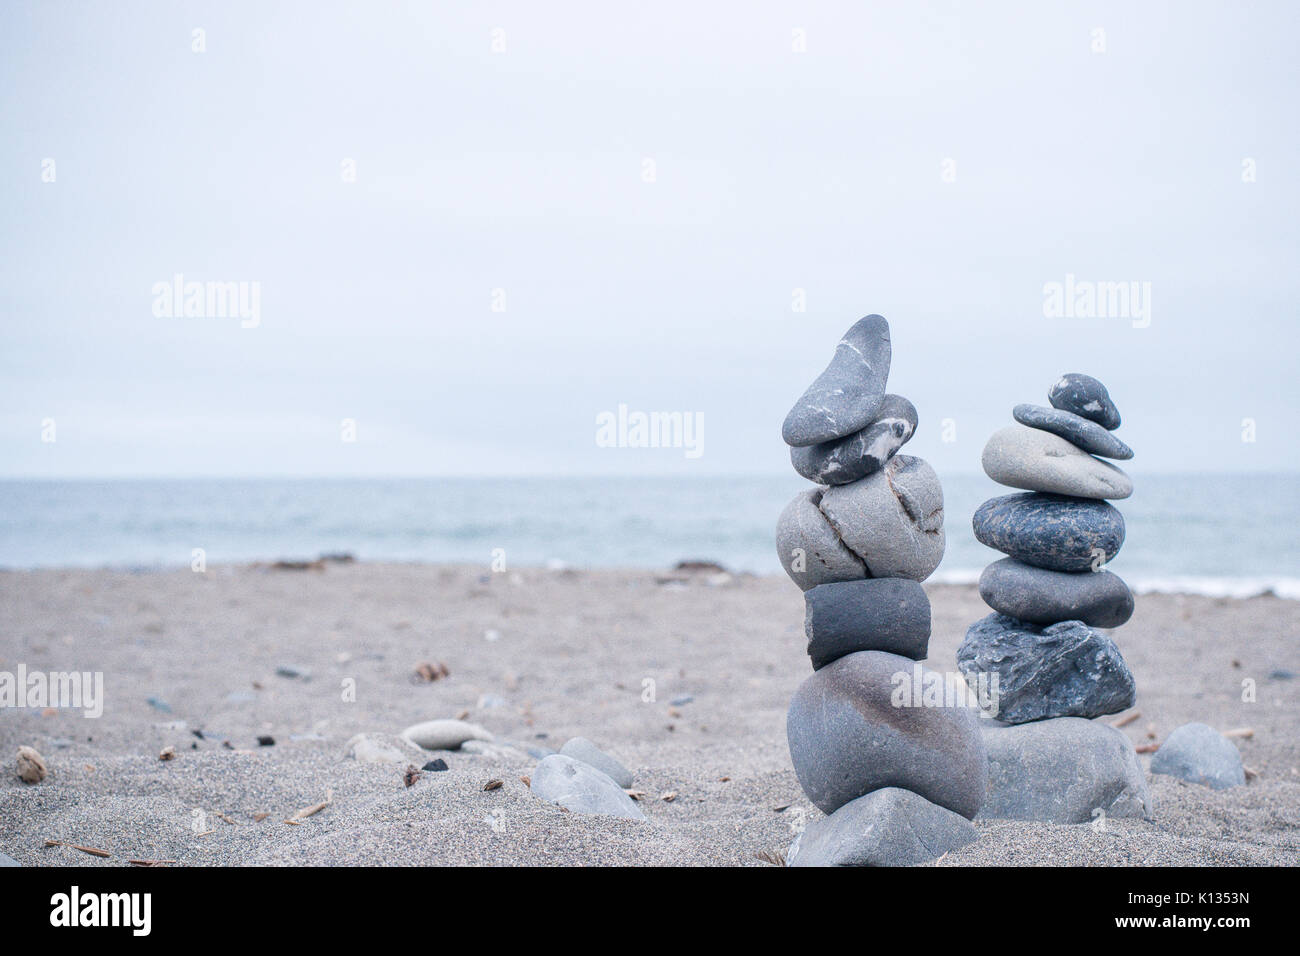 Monochrom, ruhigen, blauen gestapelte Steine auf einem Kalifornischen Strand als Symbol für Frieden, Gleichgewicht, Meditation und Achtsamkeit Stockfoto